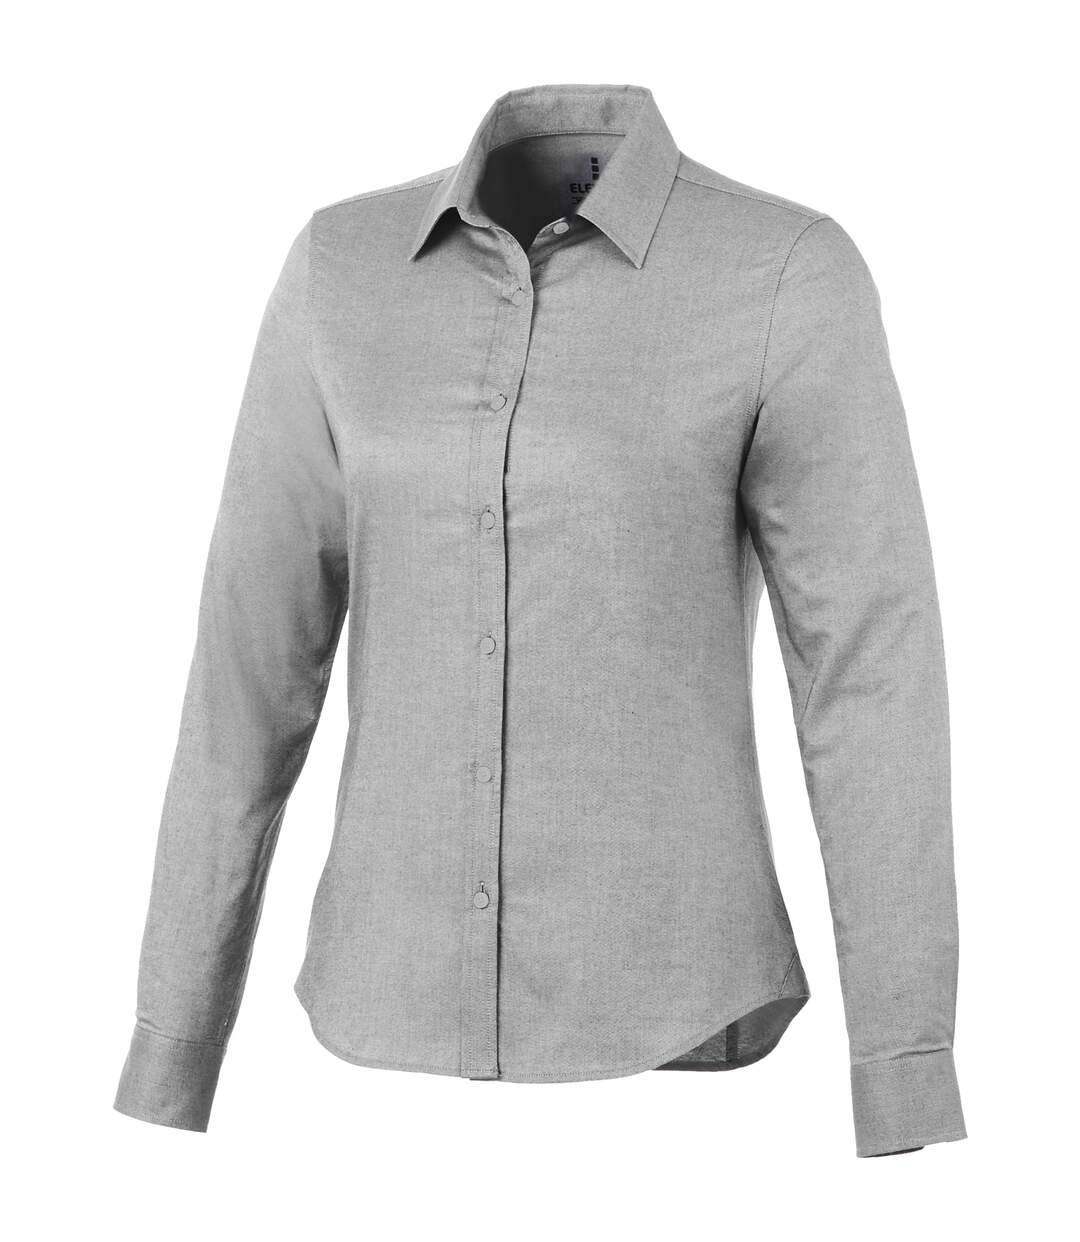 Elevate Vaillant Long Sleeve Ladies Shirt (Steel Grey)